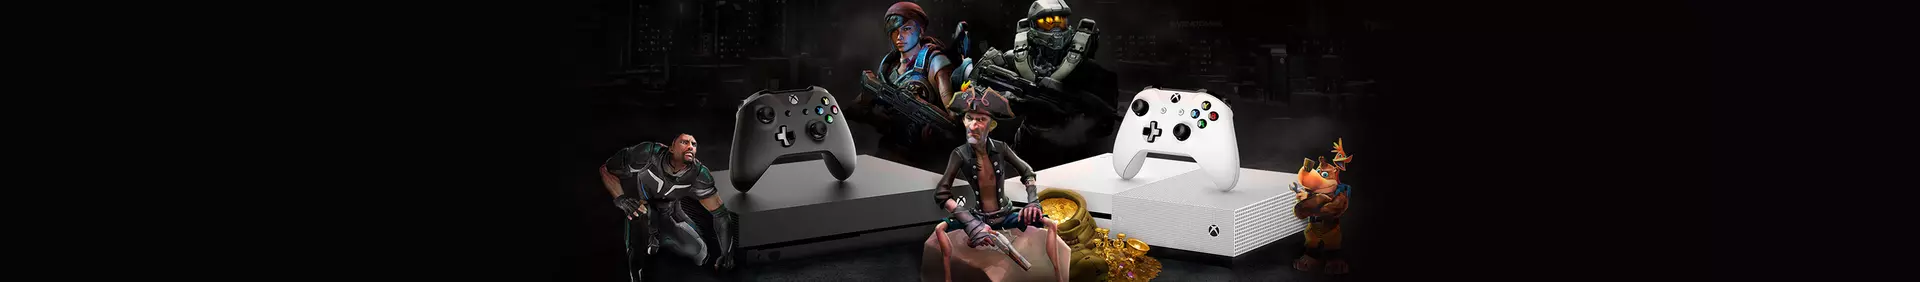 Los mejores Juegos Digitales para Xbox